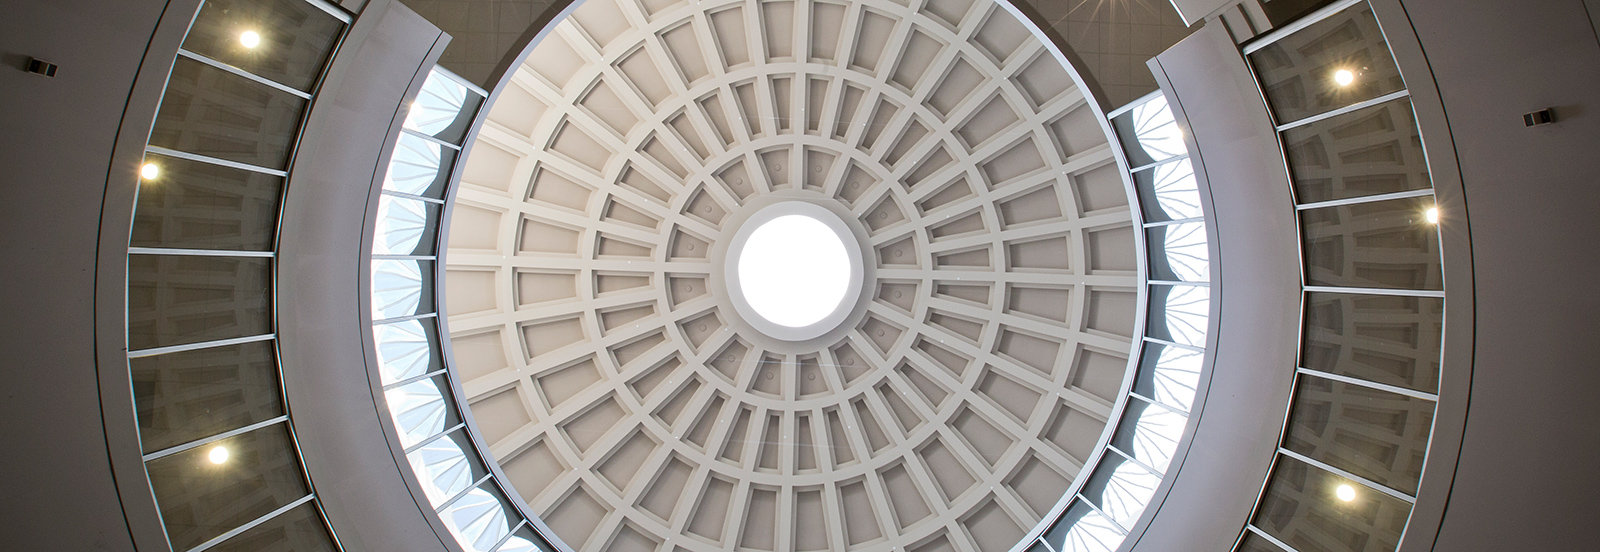 Ceiling in McWherter Llibrary Rotunda